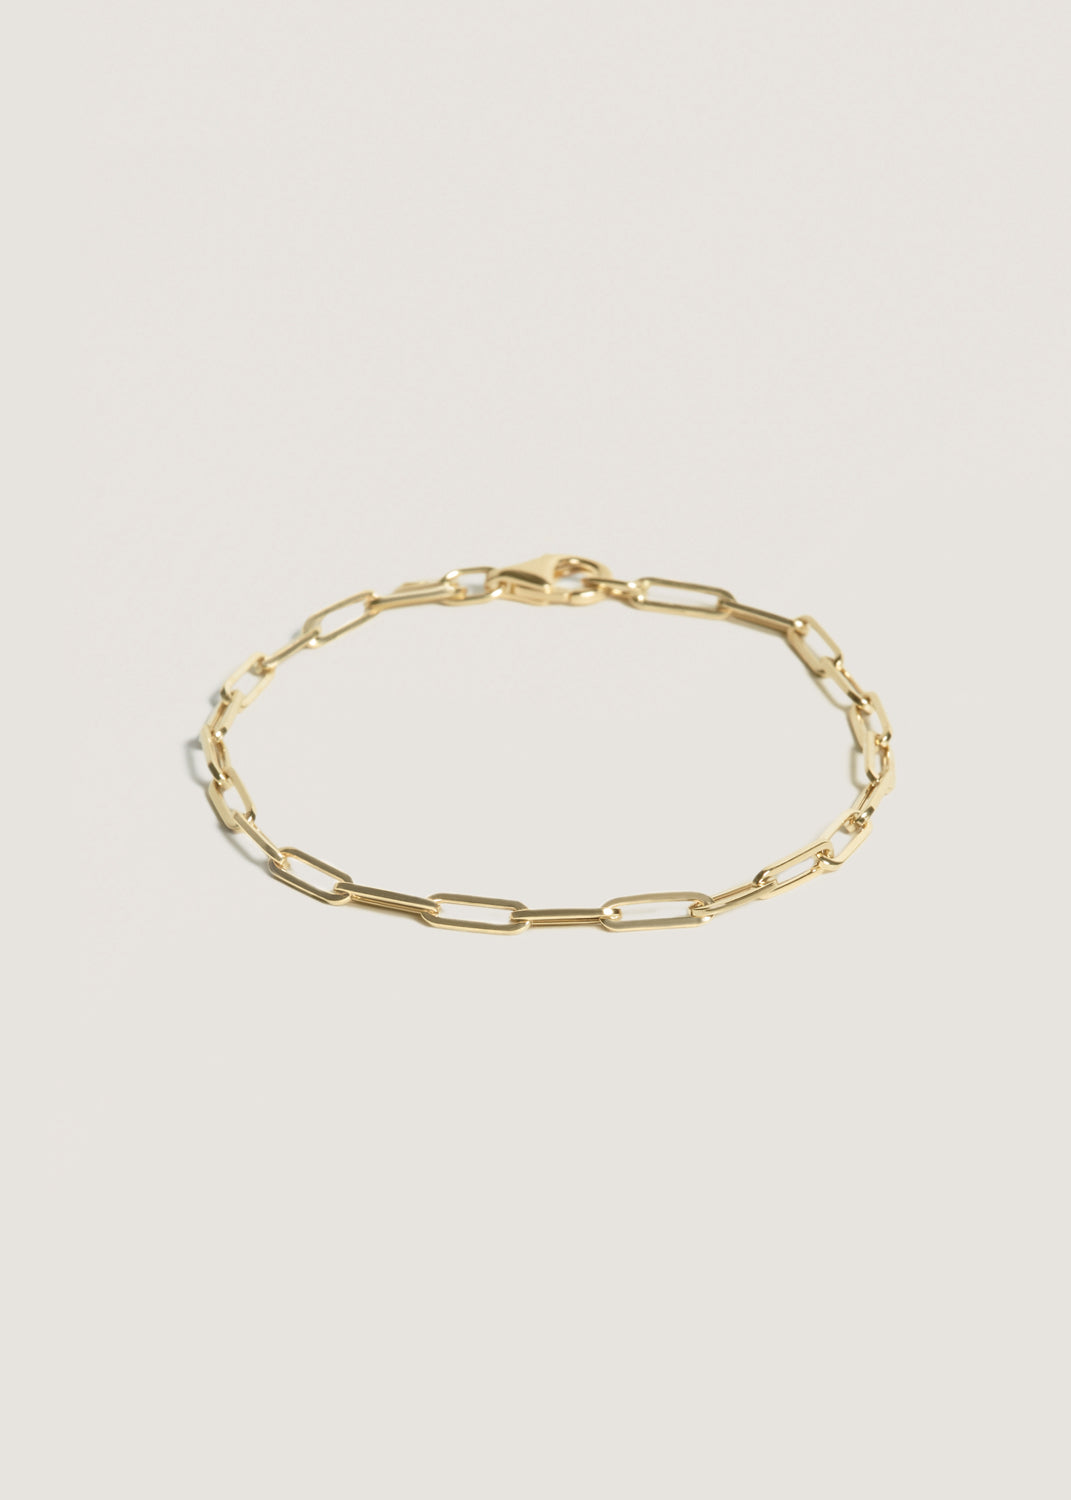 alt="Petite Link Chain Bracelet"